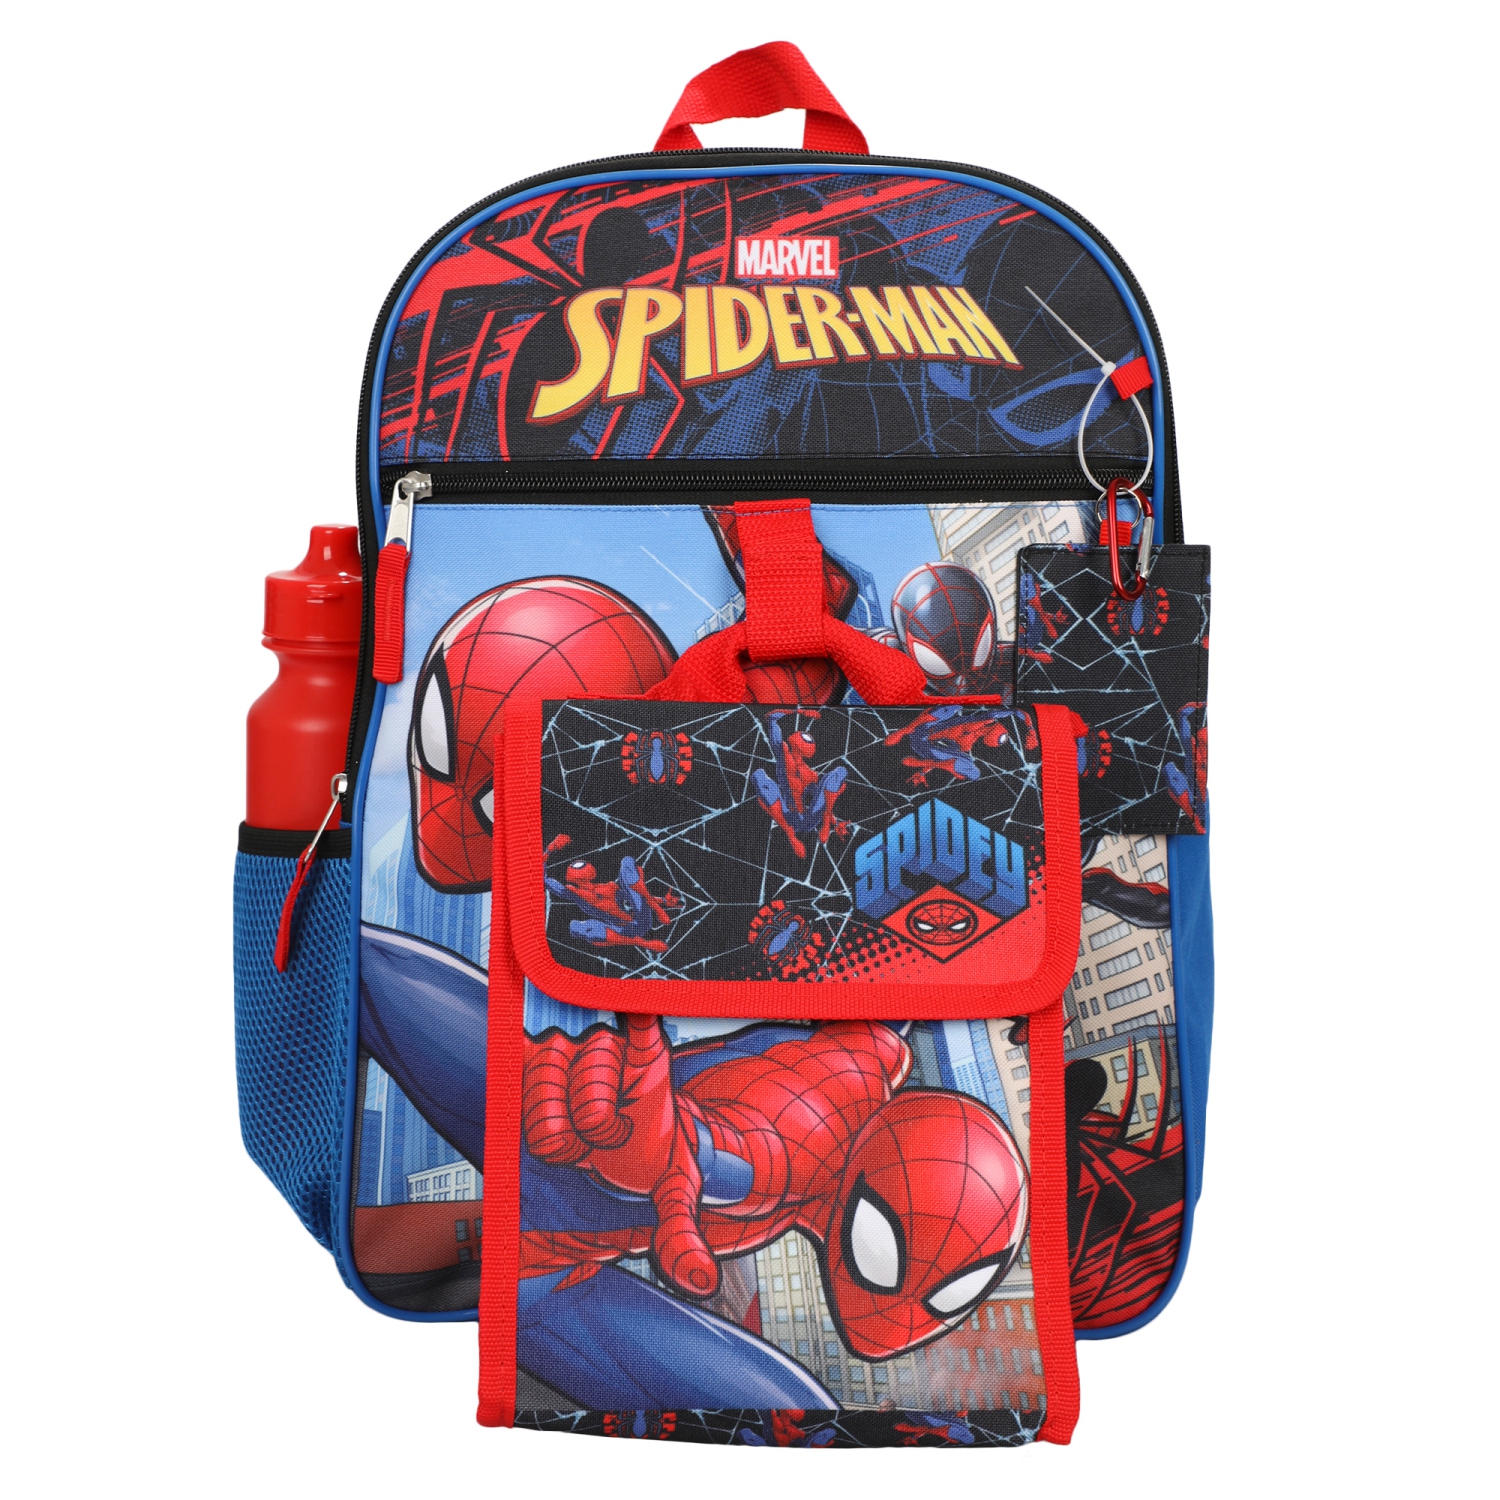 Marvel Spider-Man Miles Morales 5 Piece Kids 16" Backpack Set